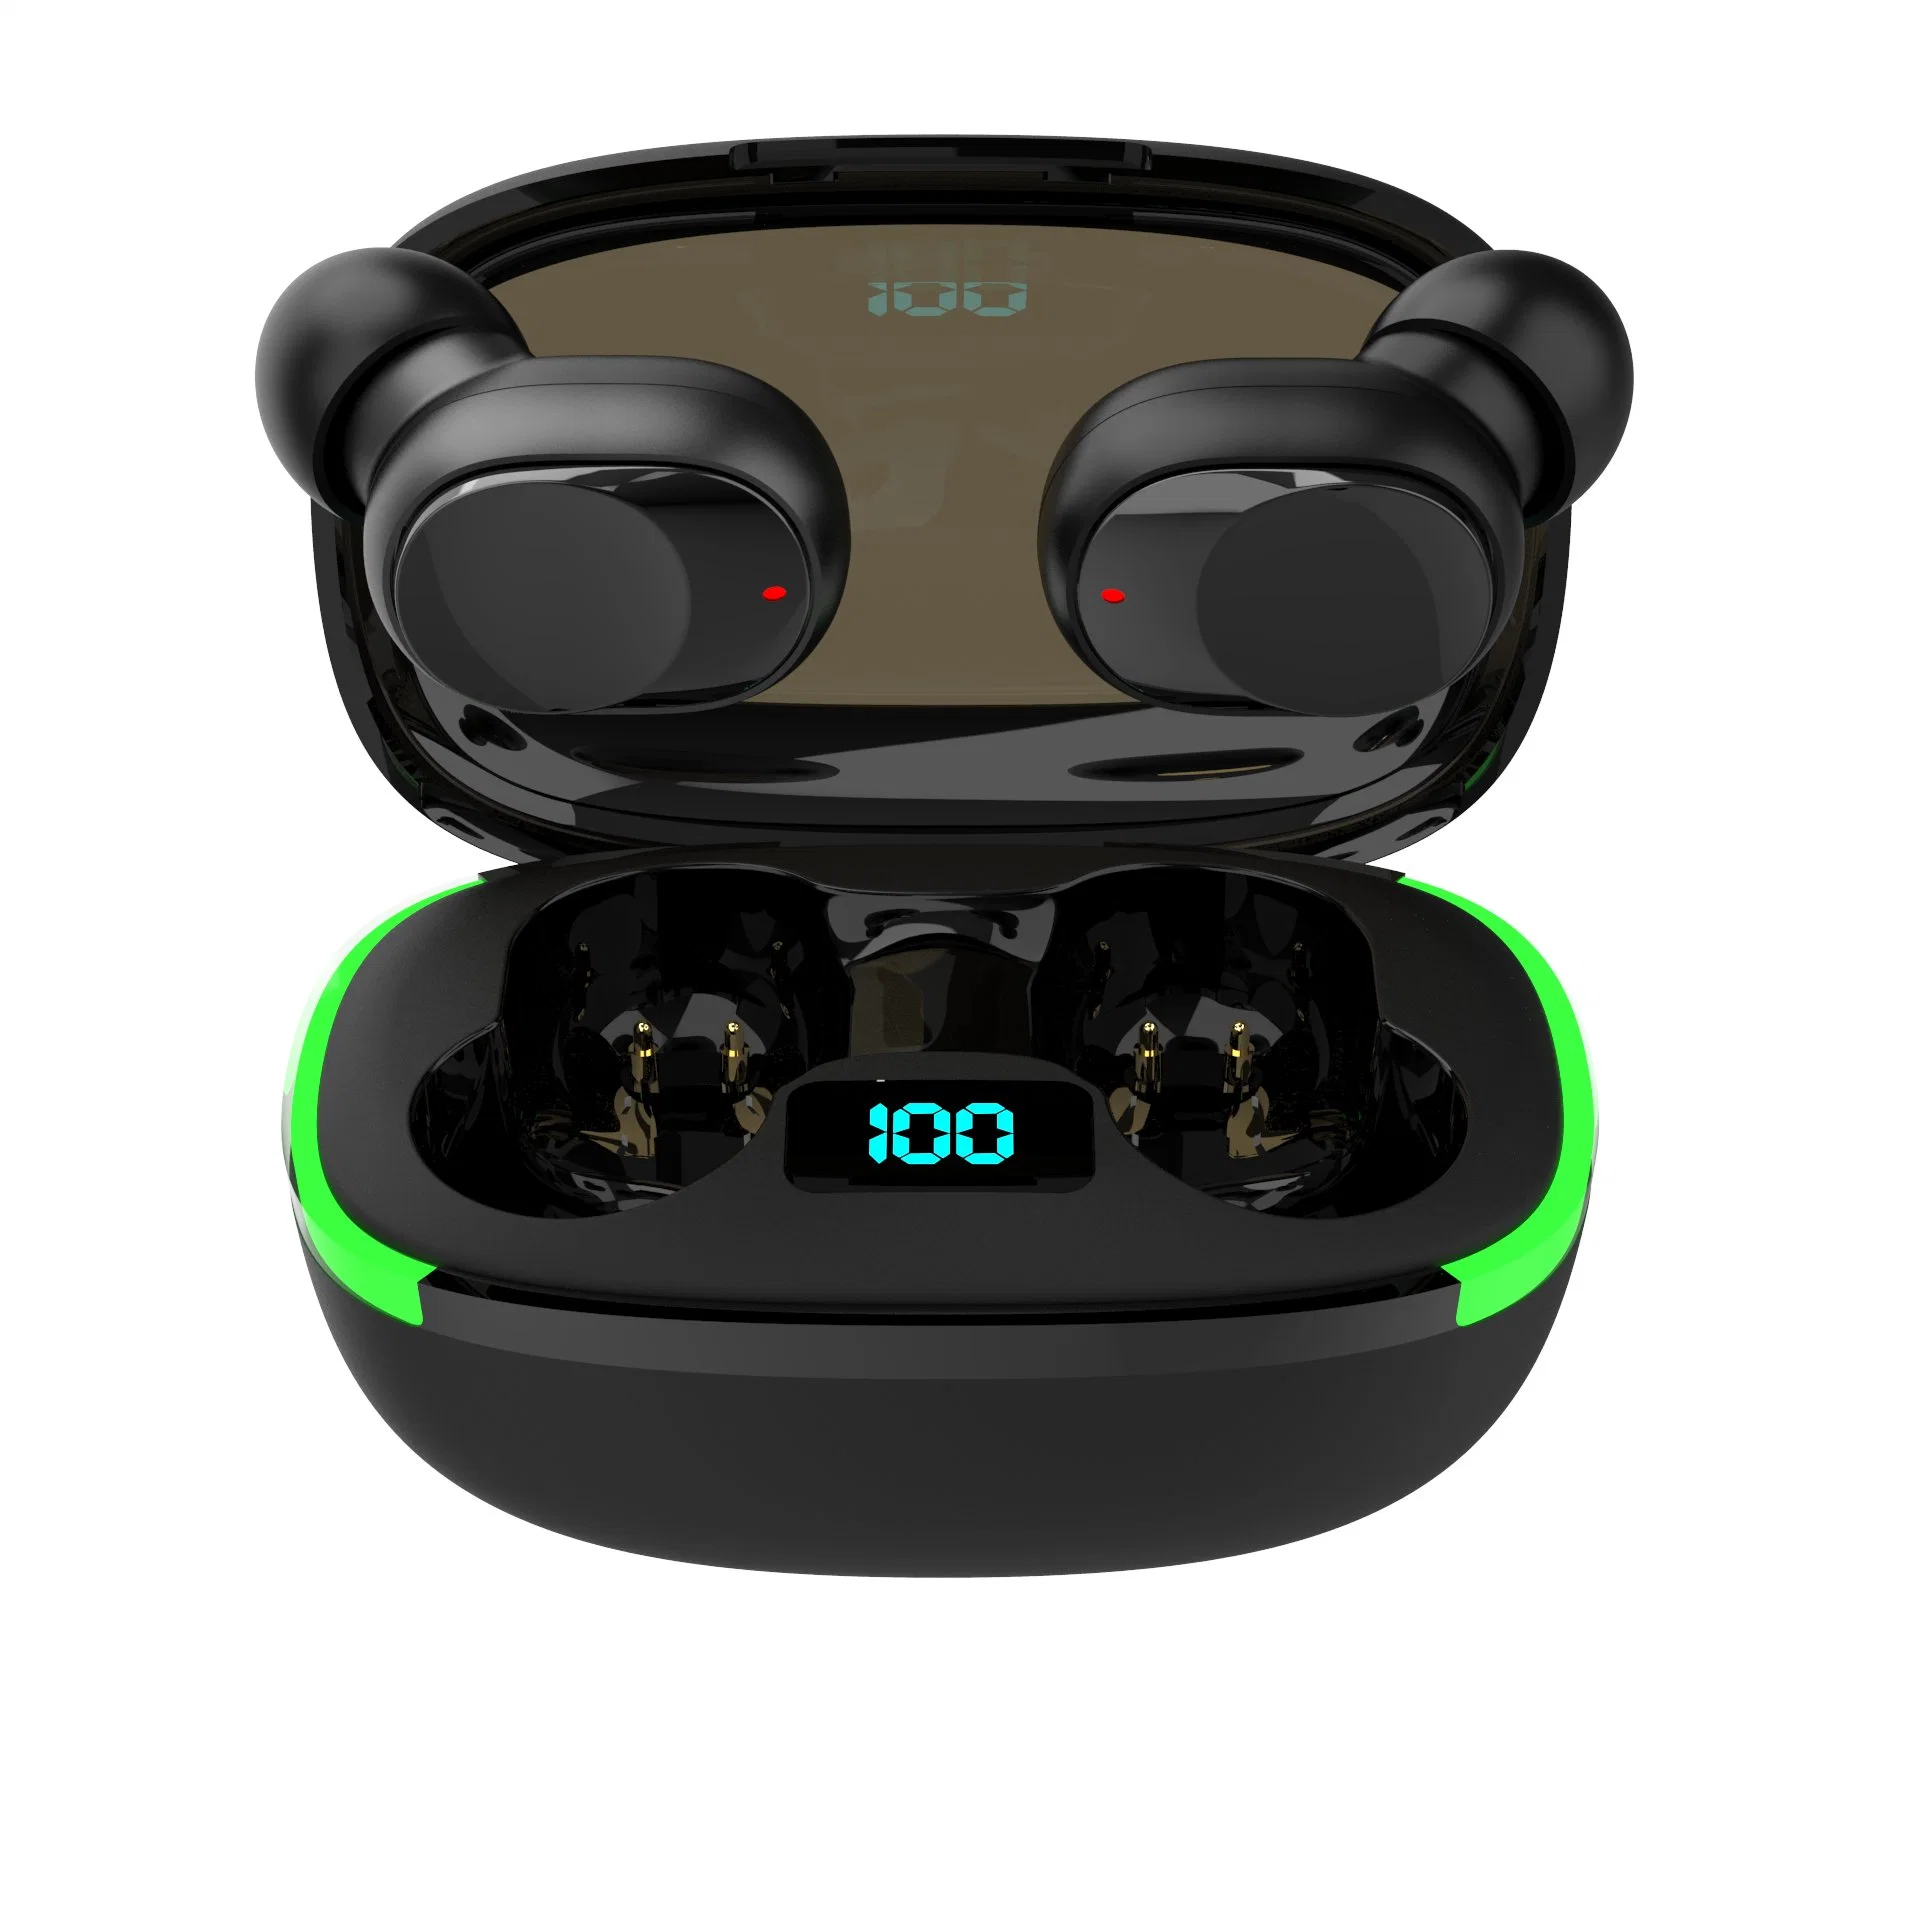 2023 Fone de ouvido Bluetooth Tws com tela de exibição de energia no ouvido, fone de ouvido esportivo para celular com microfone e estojo de recarga, fone de ouvido sem fio.